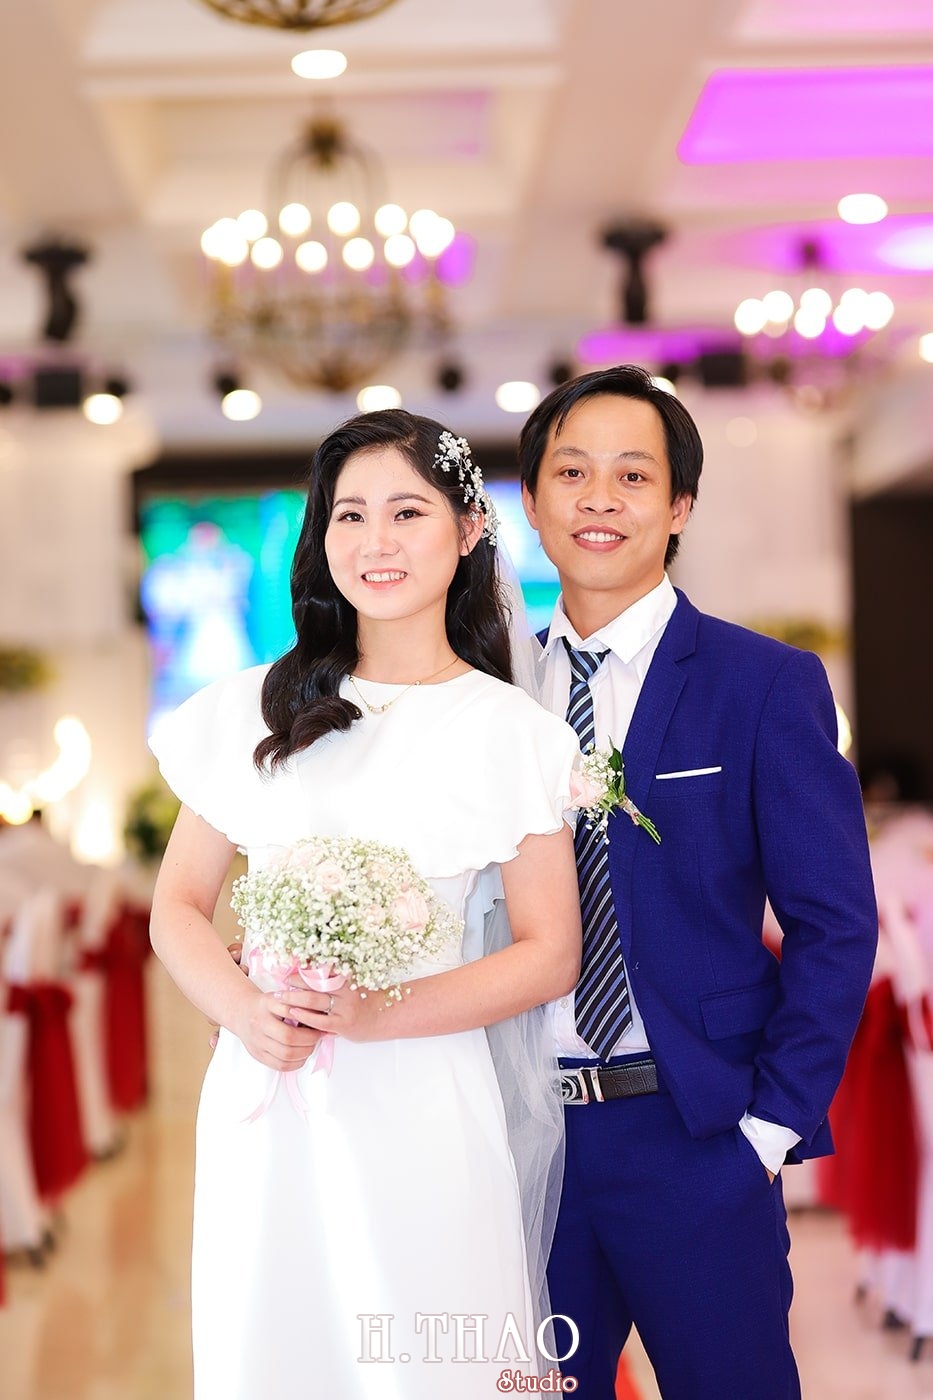 IMG 0795 min - Chụp hình tiệc cưới giá rẻ chất lượng tại Tp.HCM – HThao Studio